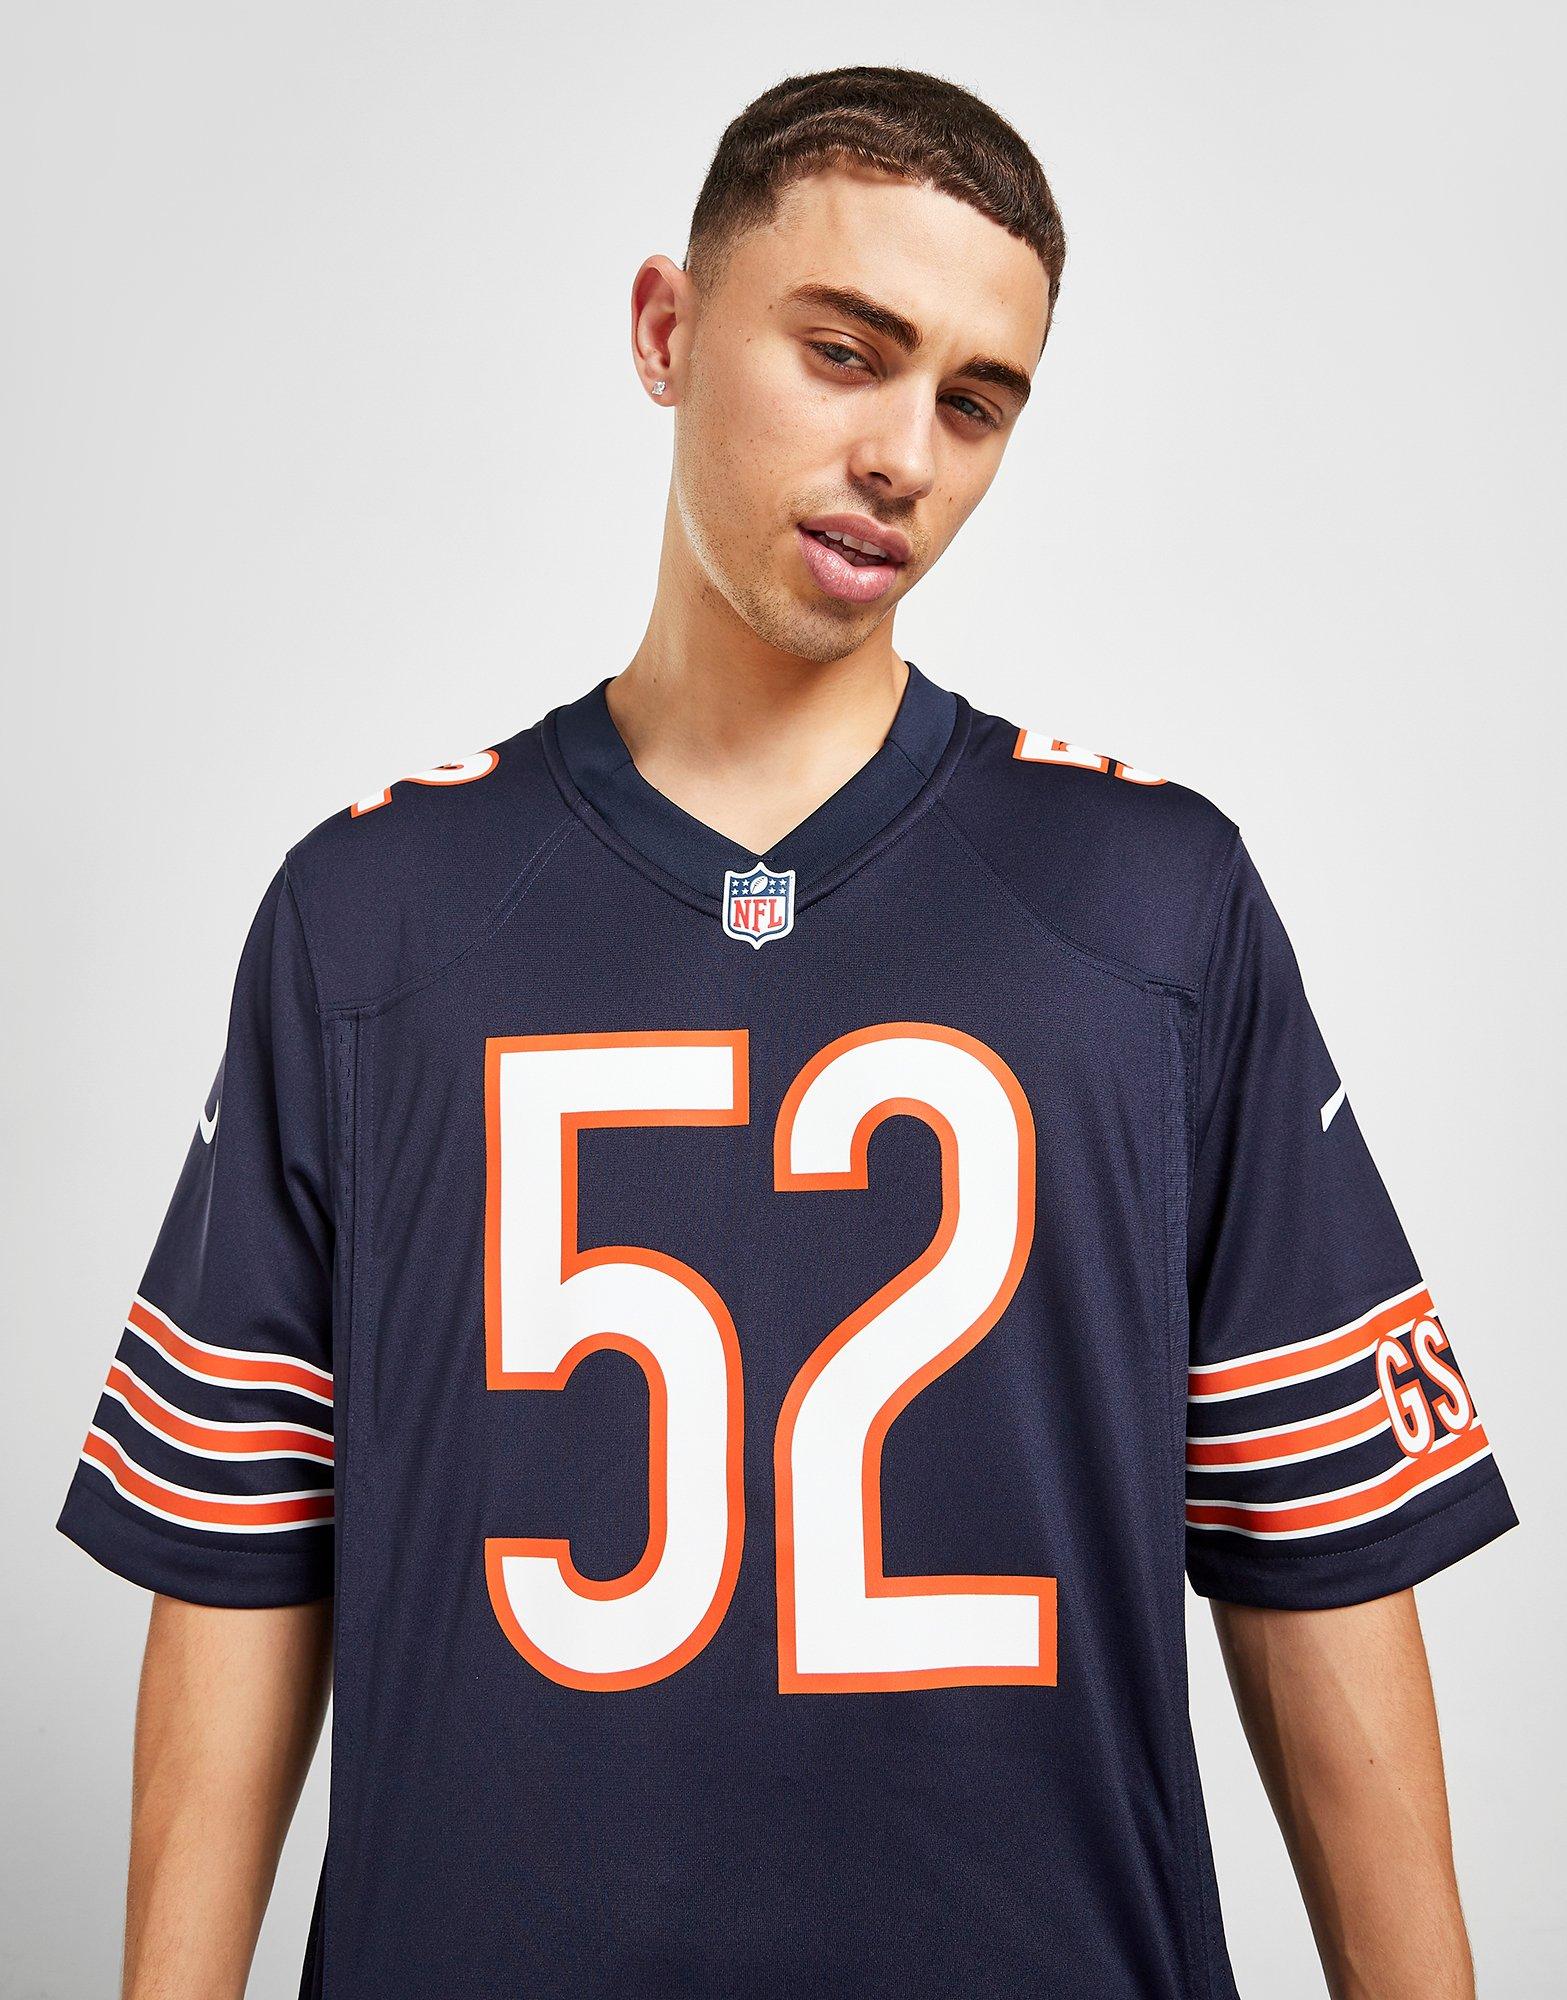 Buy Nike NFL Chicago Bears Mack #52 